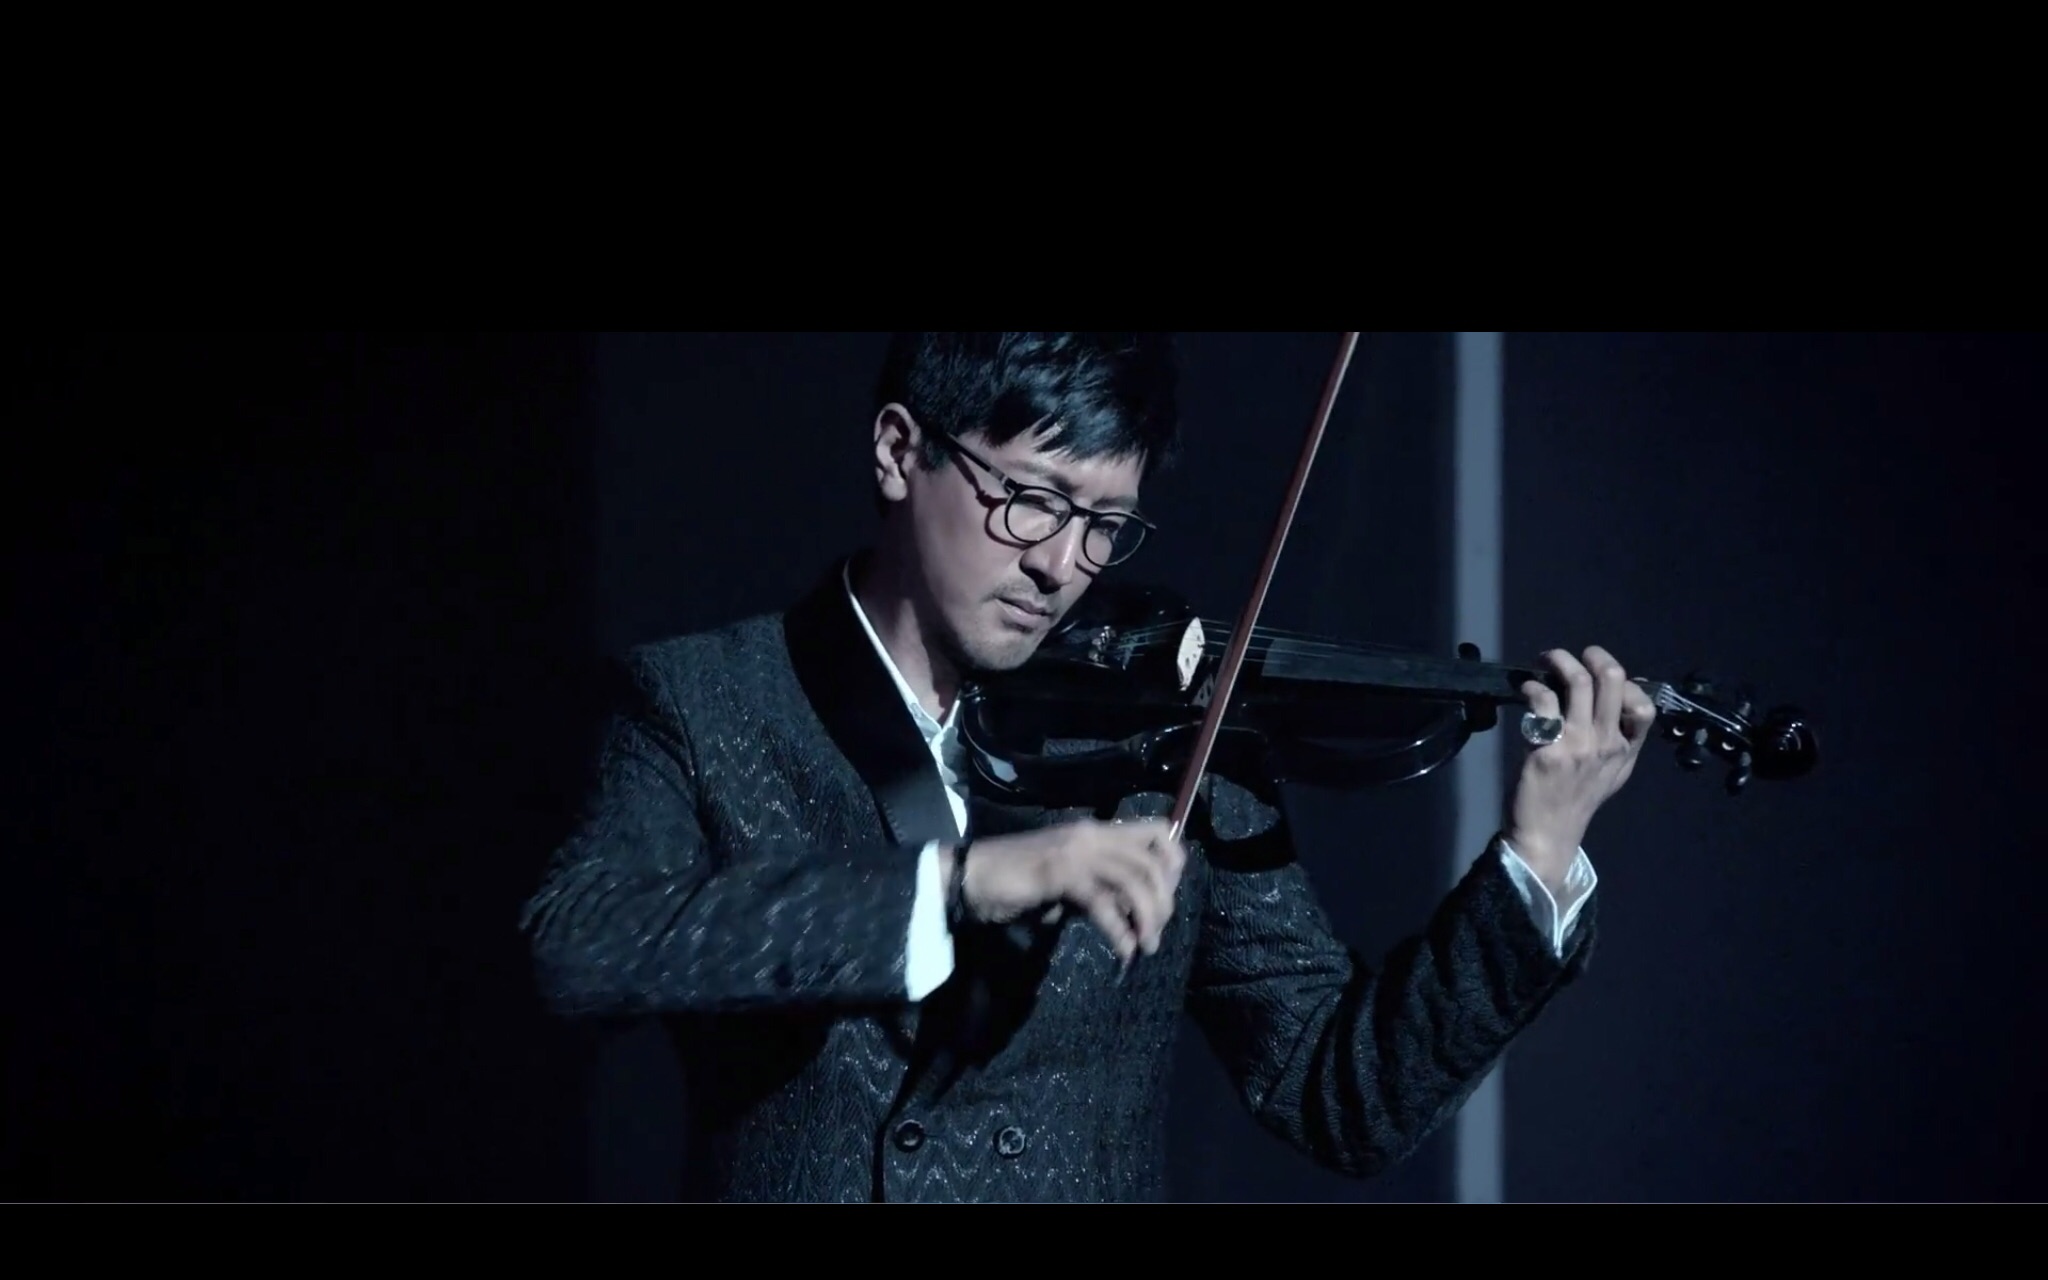 【张鲁一·柴青】施华洛世奇微电影《爱·璀璨》 小提琴bgm自剪 乐器